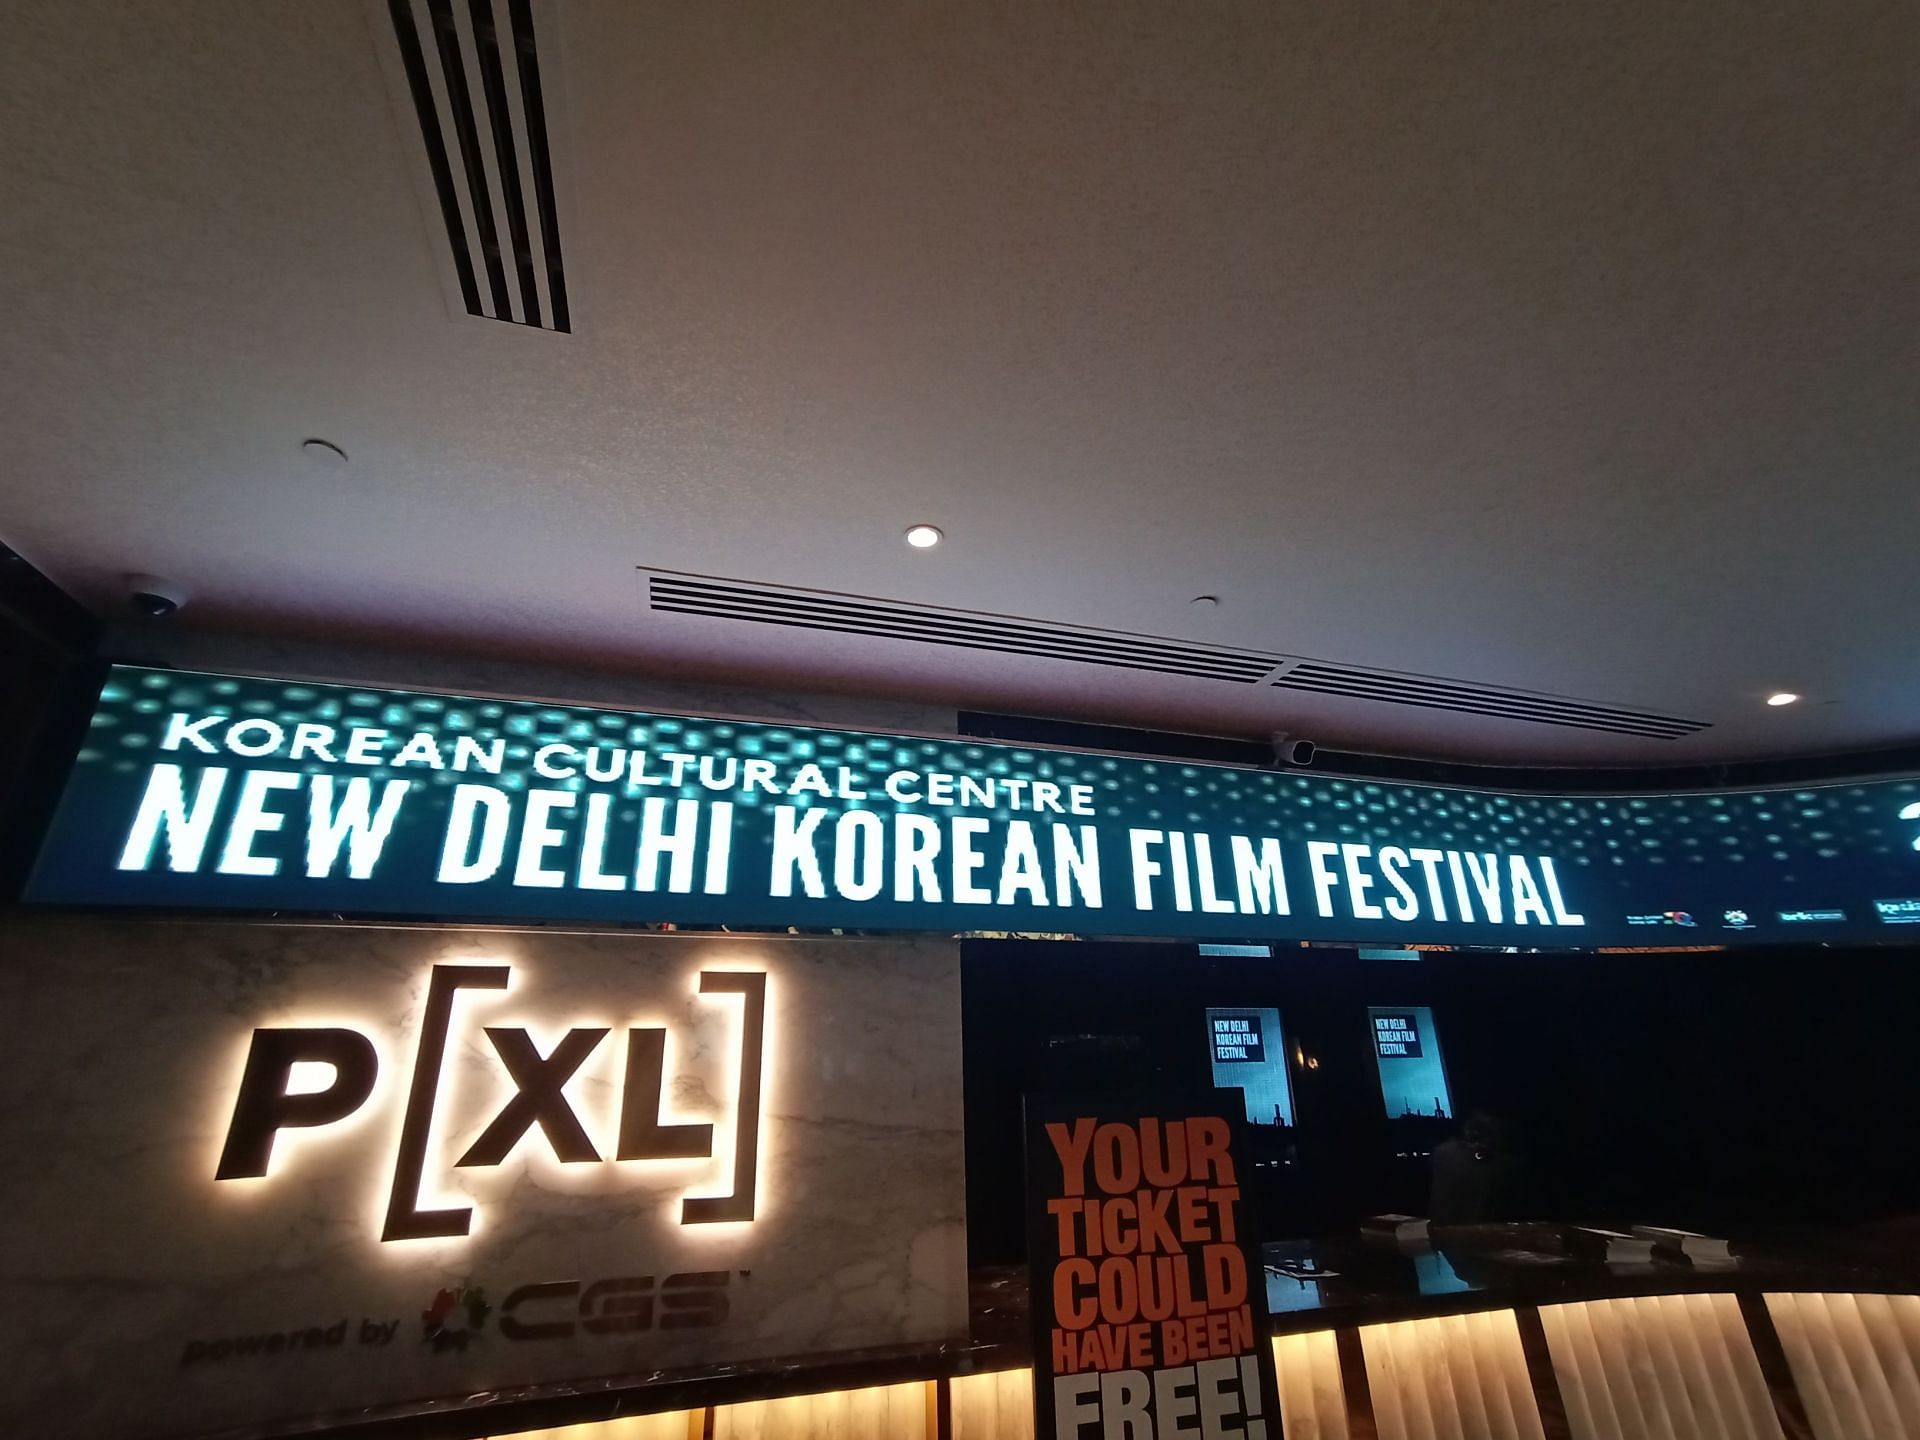 Korean Film Festival (Image via Sportskeeda)